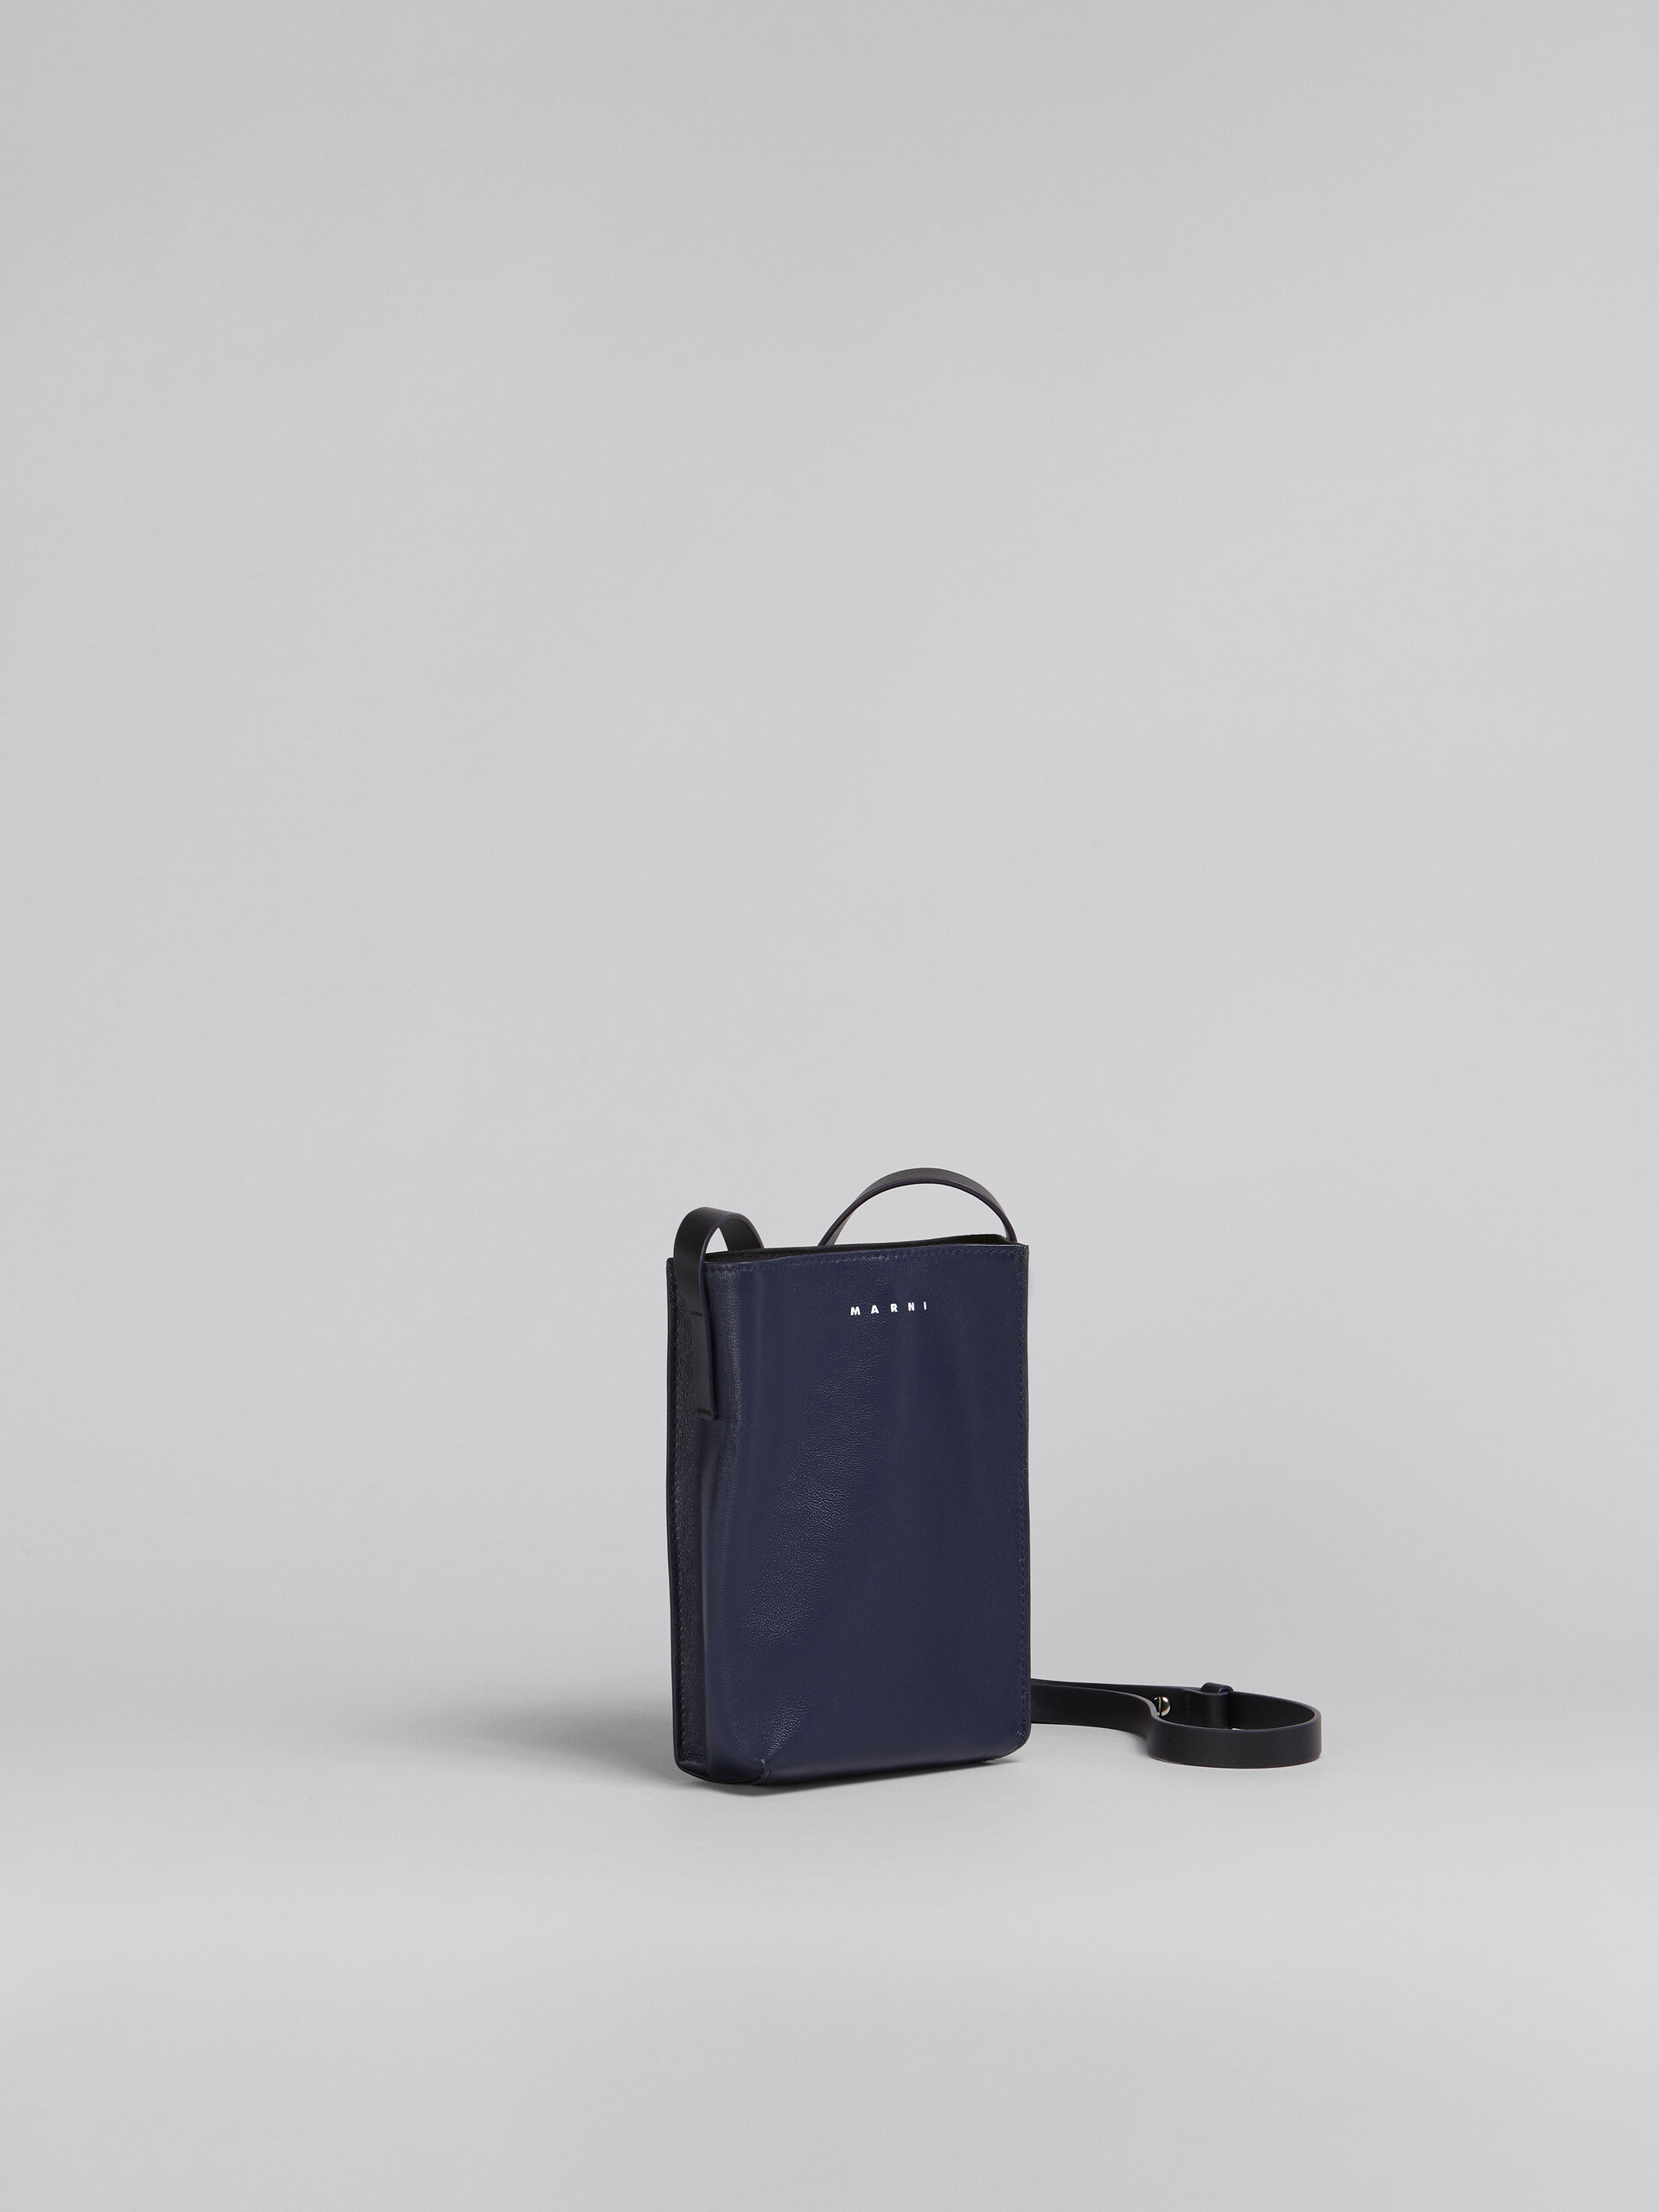 Sac MUSEO SOFT en cuir brillant bleu et noir - Sacs portés épaule - Image 6